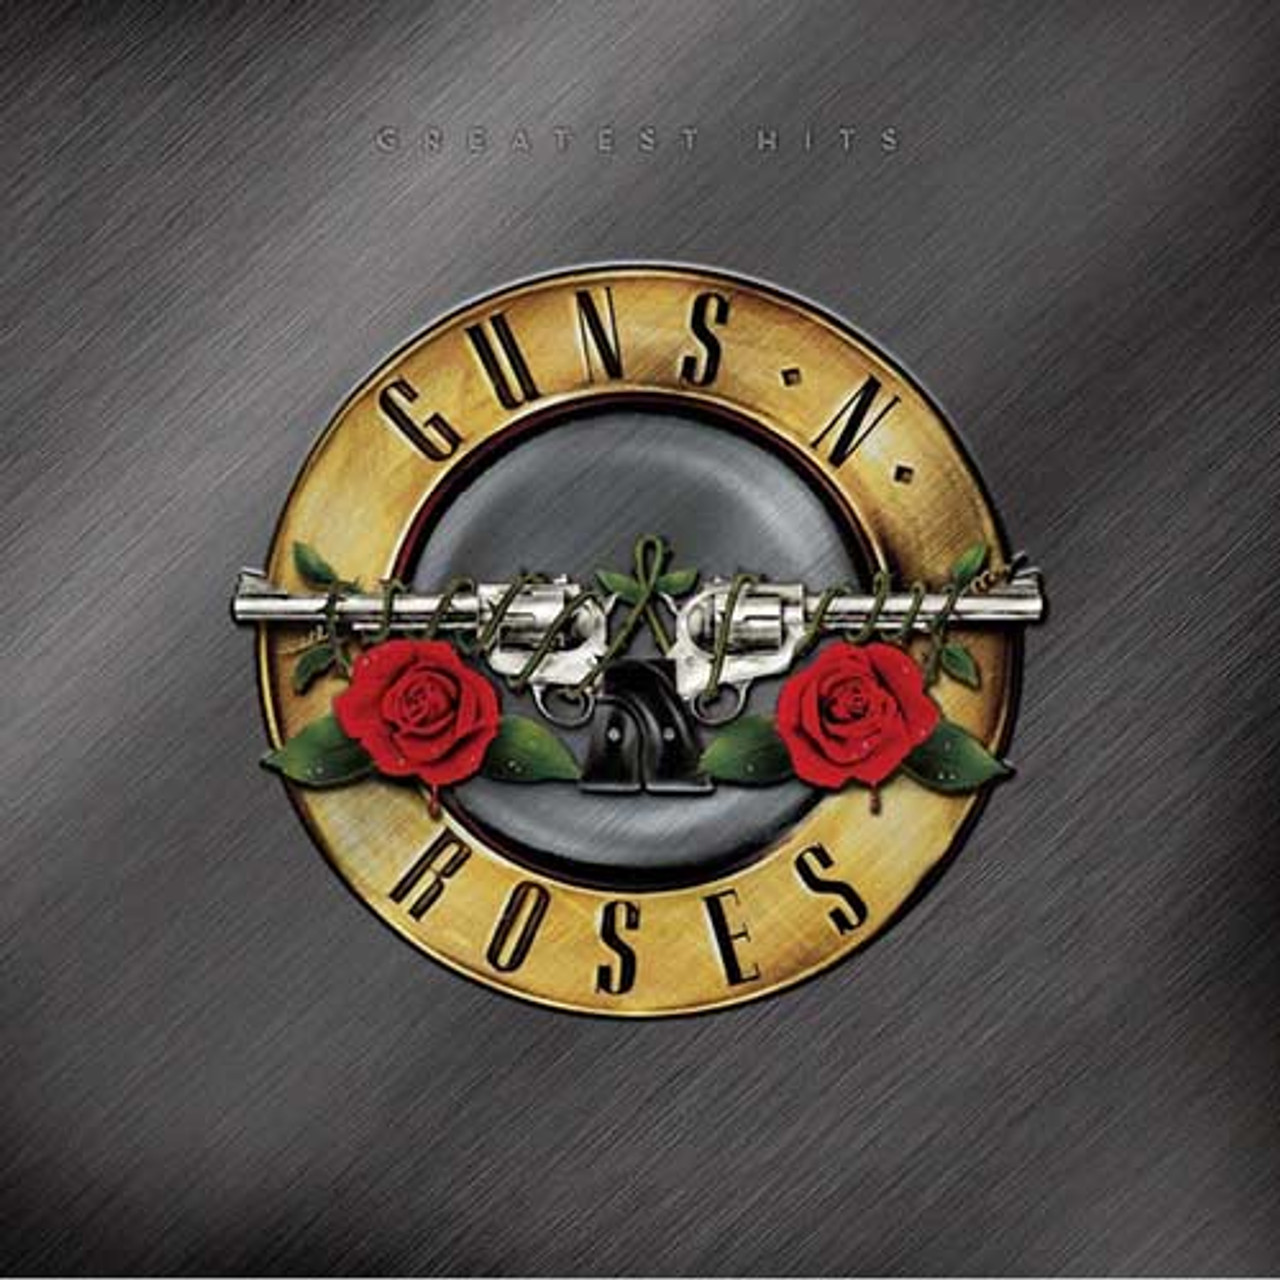 Greatest Hits (Guns N' Roses album) - Wikipedia